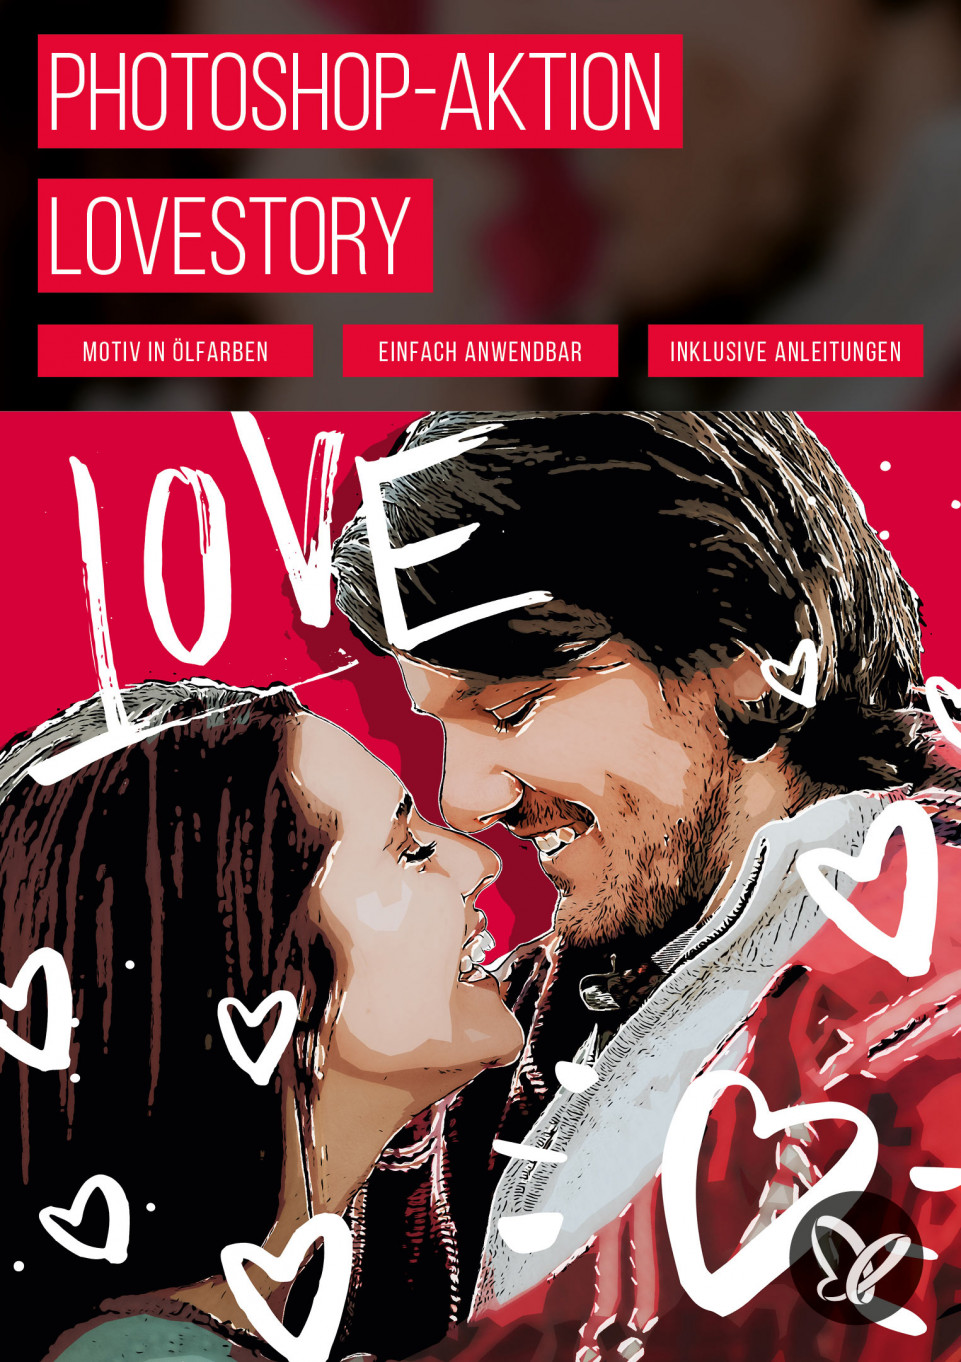 Photoshop-Aktion „Lovestory“: perfekt für Hochzeiten und zum Valentinstag